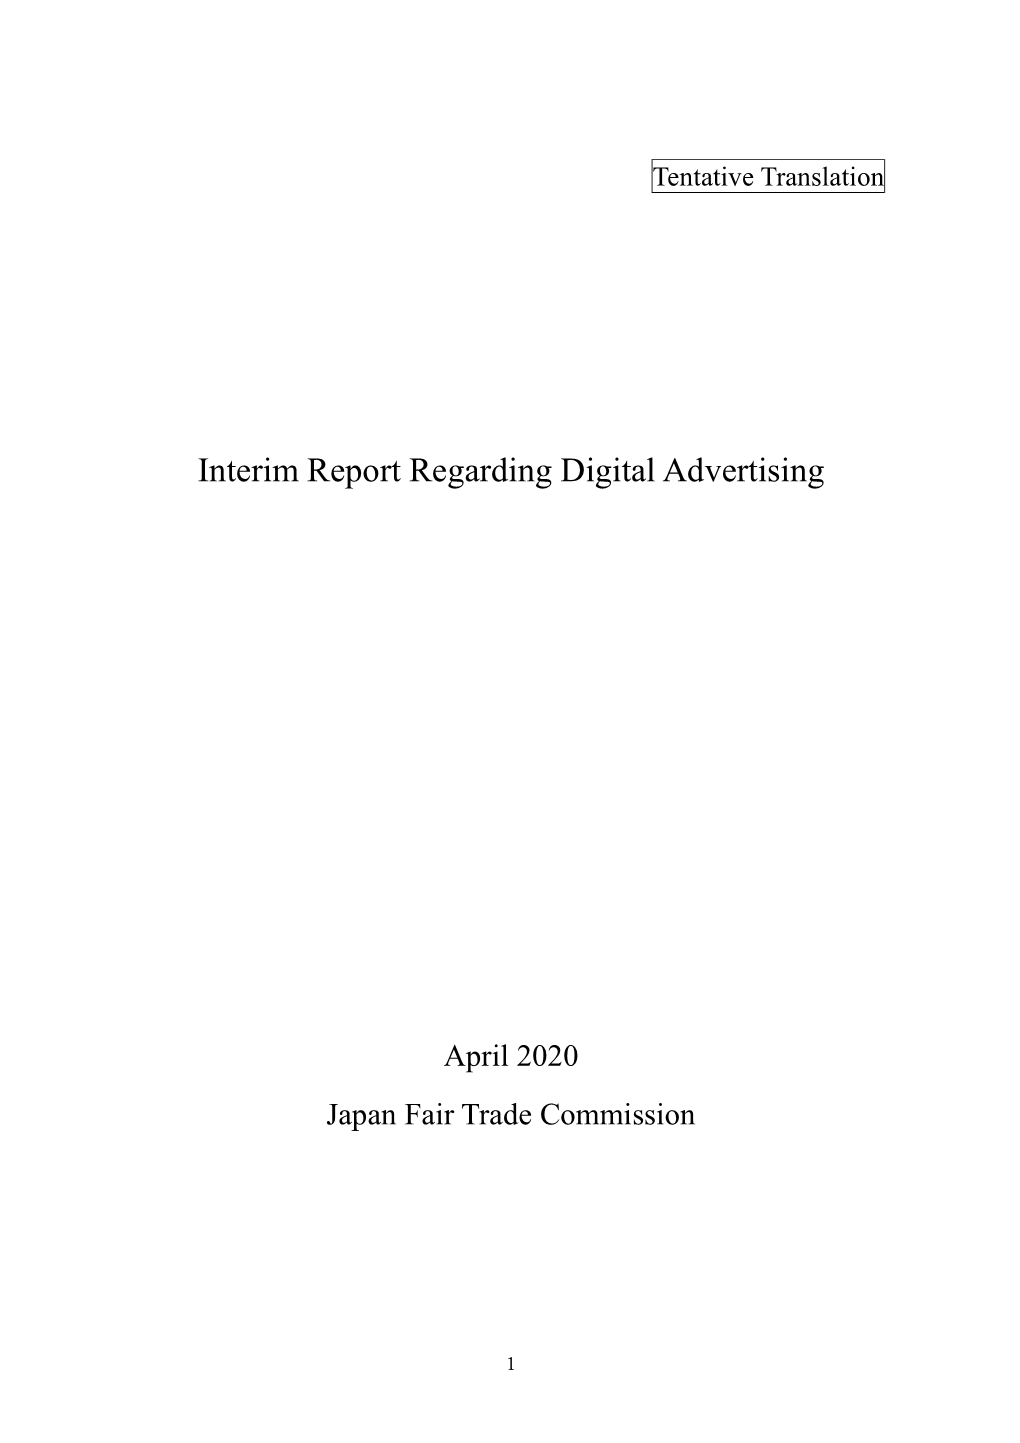 Interim Report Regarding Digital Advertising in PDF(PDF : 2591KB)